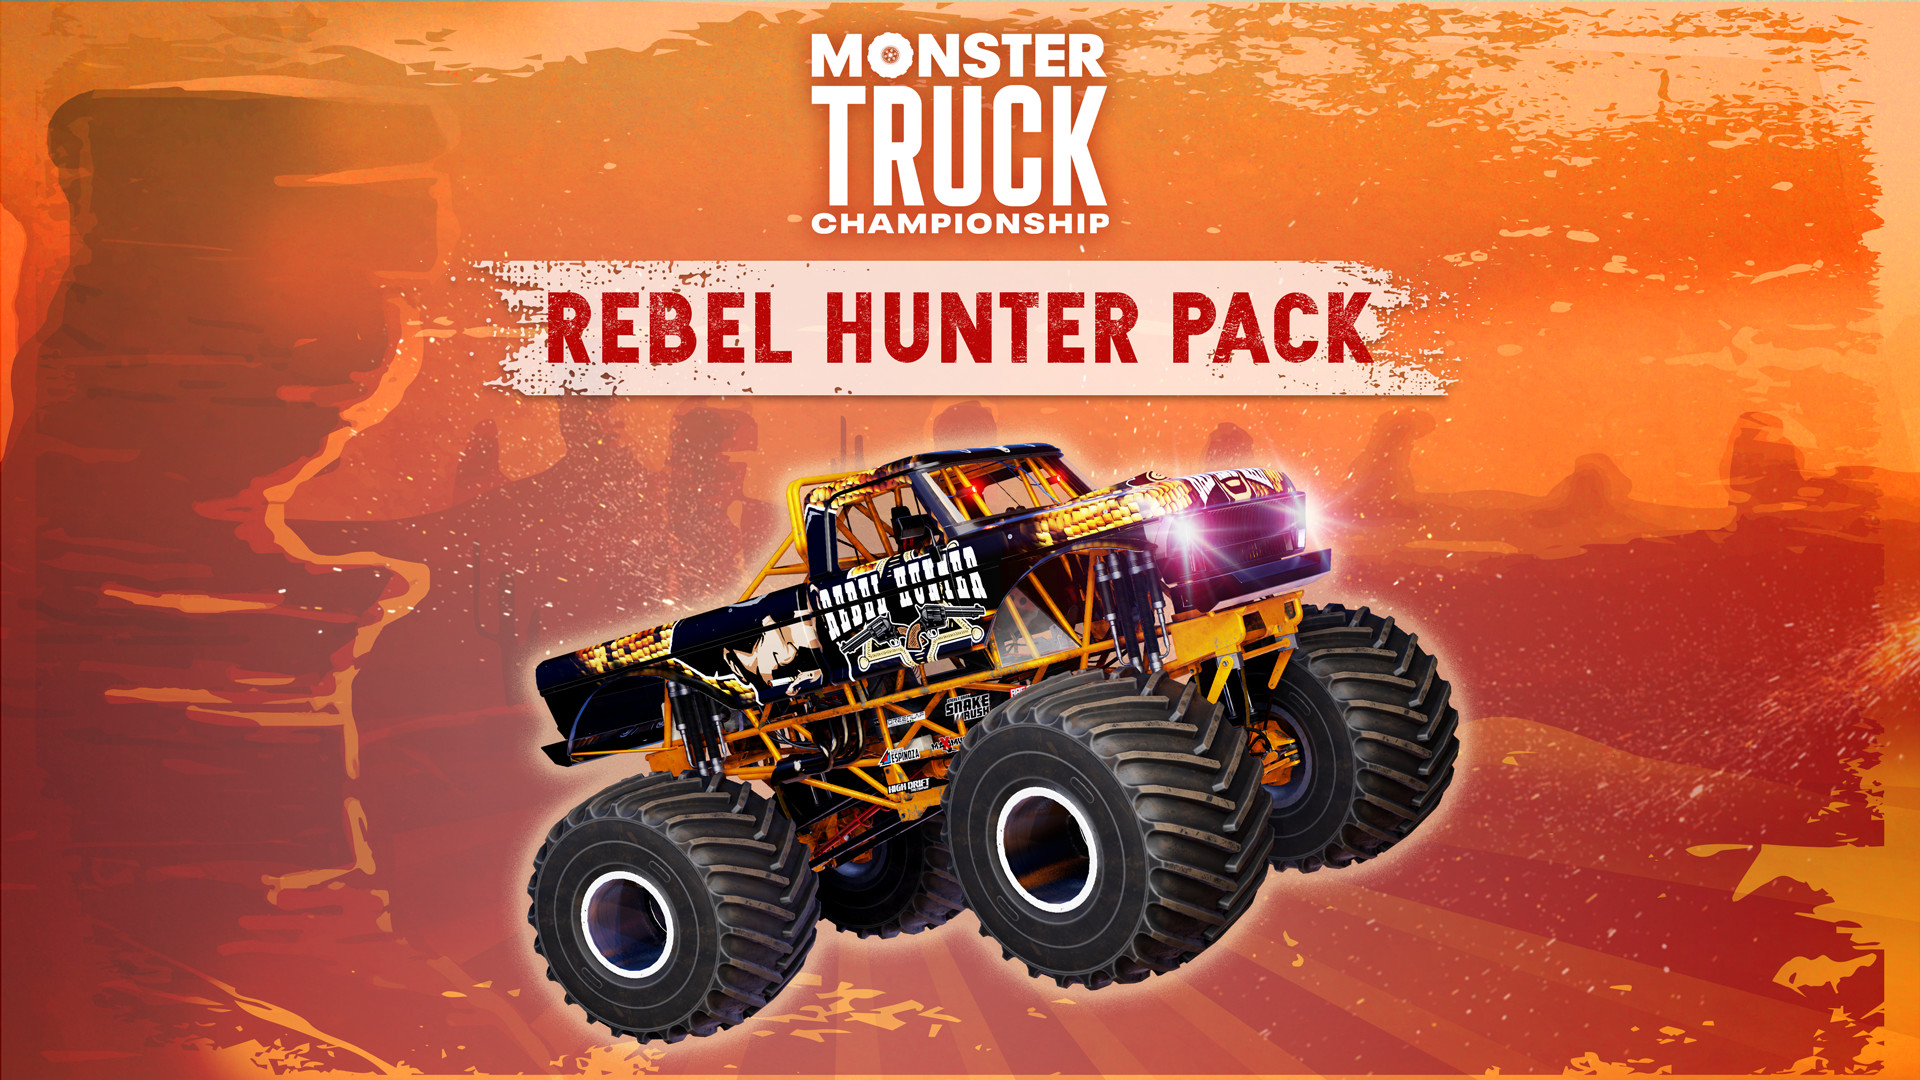 Monster Truck Championship - Rebel Hunter Pack DLC Steam CD Key 10.16 $